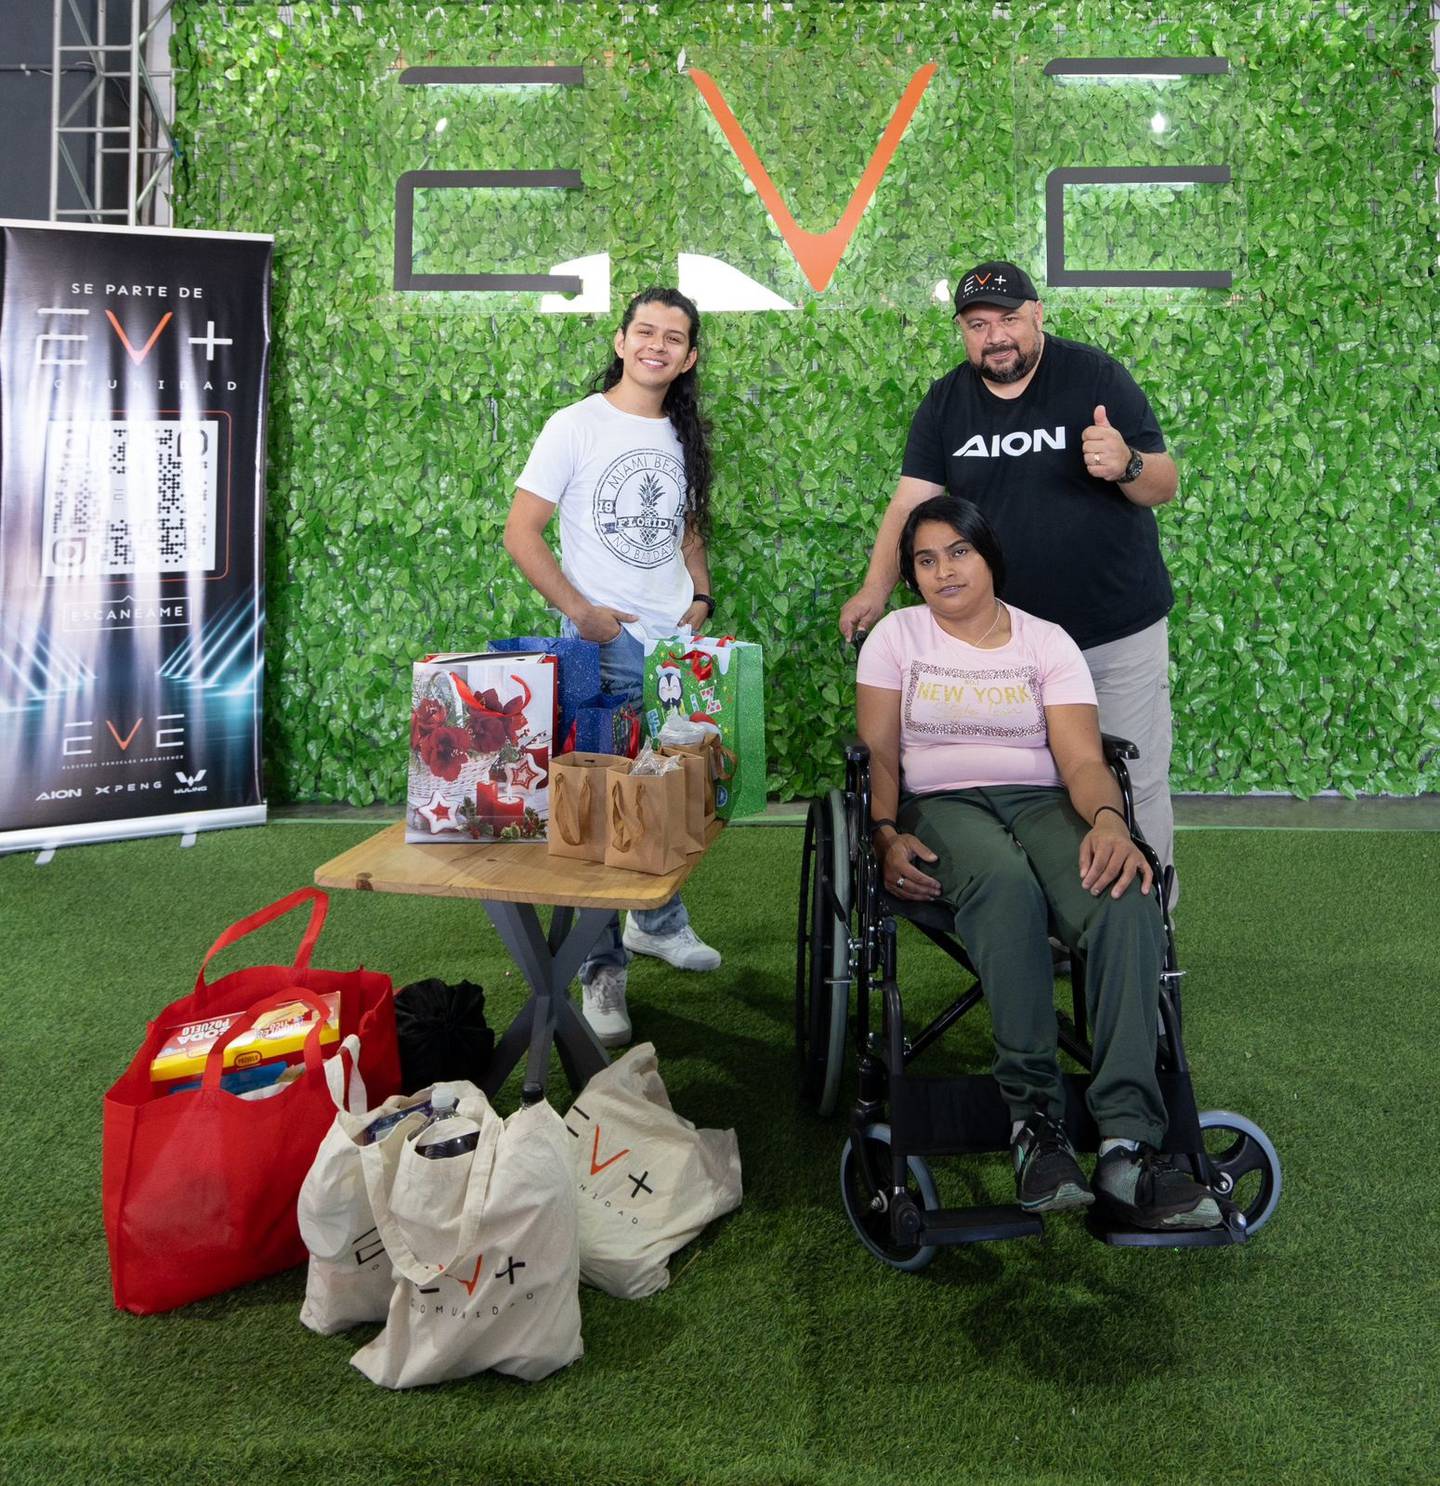 Elizabeth Espinoza recibió una silla de ruedas y varios obsequios de parte de un grupo de gente que se conoció porque compraron un carro eléctrico.